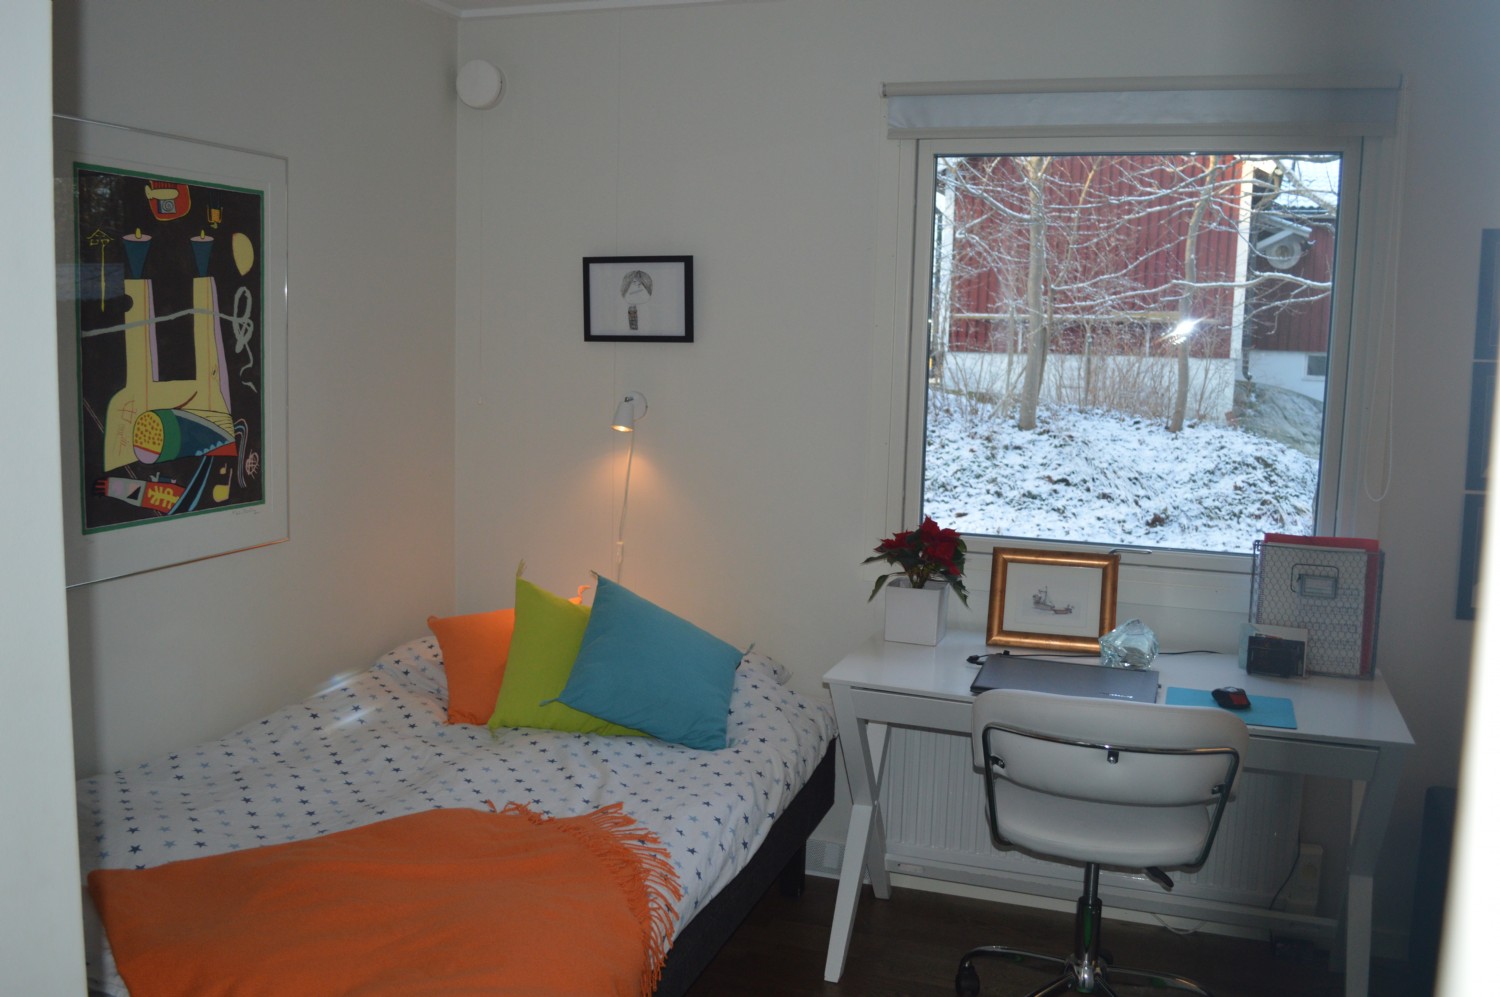 Sovrum nr 3 enkelsng 120*200 cm/ Bedroom 2 with single bed 120*200 cm 